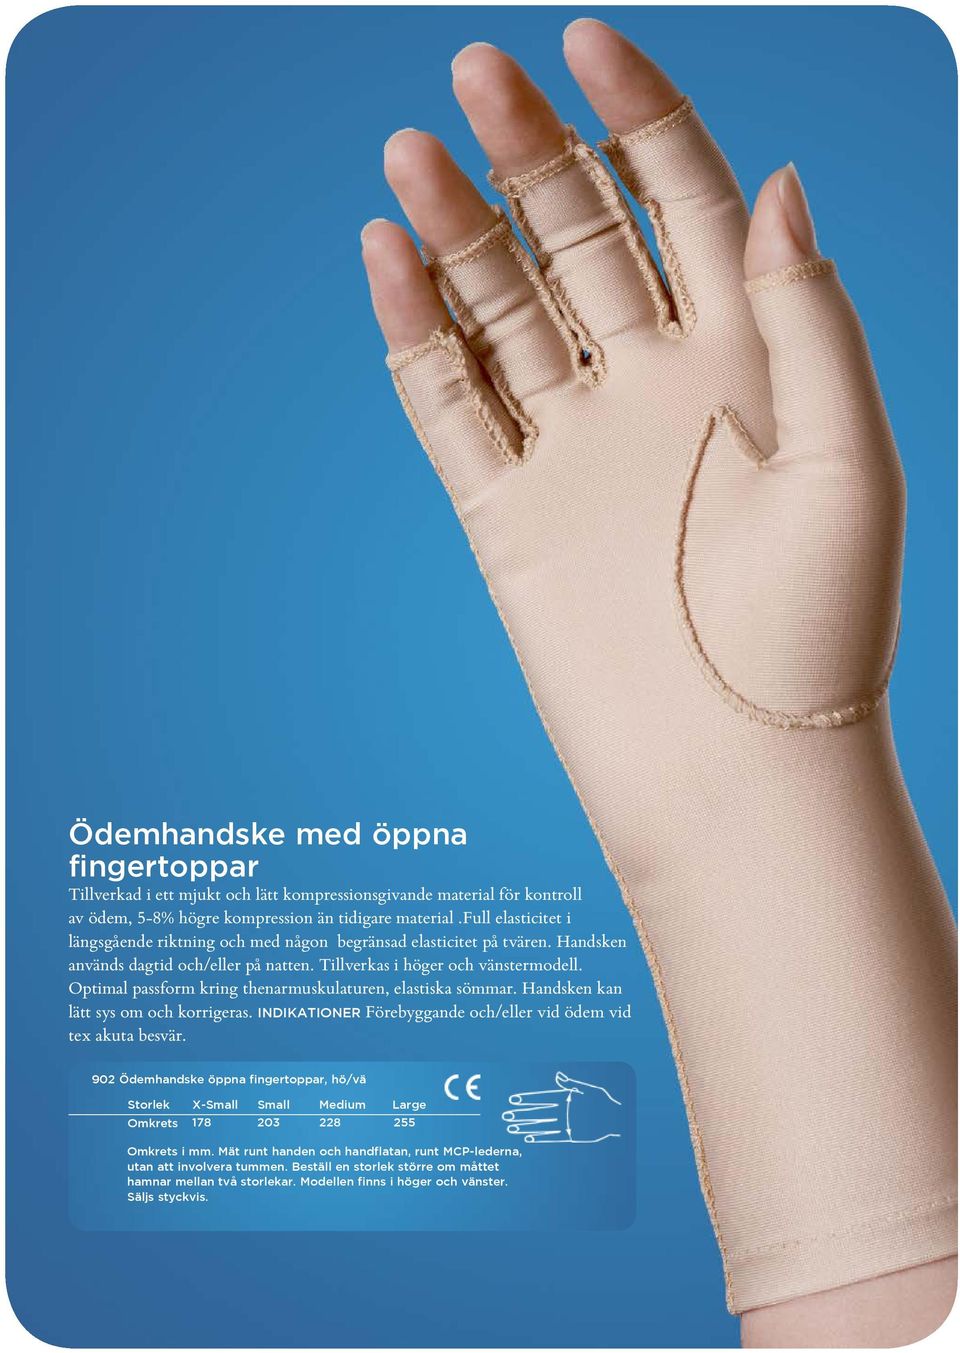 Optimal passform kring thenarmuskulaturen, elastiska sömmar. Handsken kan lätt sys om och korrigeras. INDIKATIONER Förebyggande och/eller vid ödem vid tex akuta besvär.